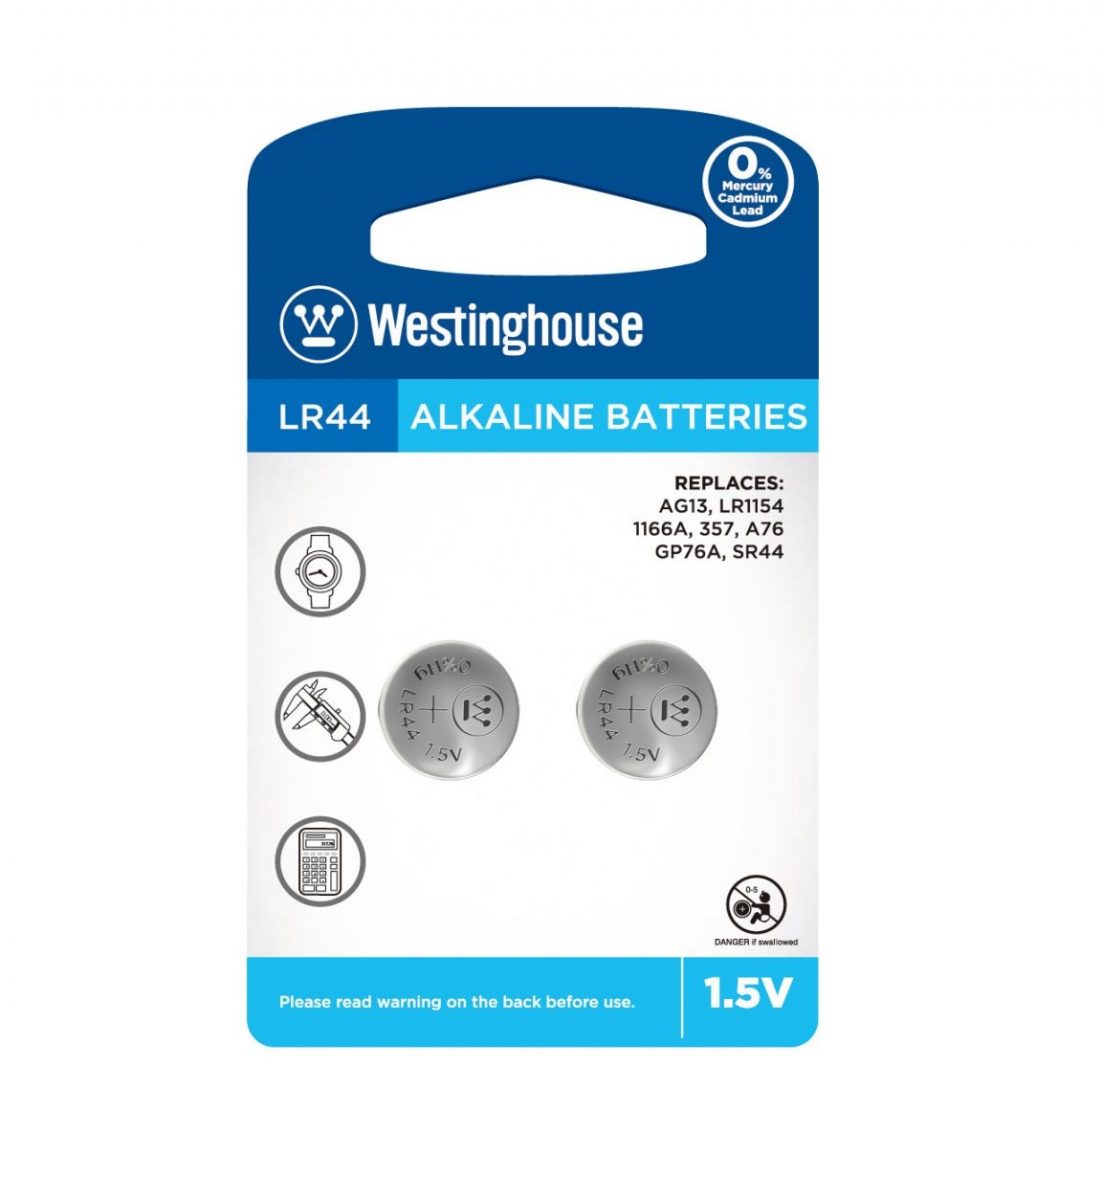 Westinghouse knoflíková alkalická baterie LR44 (LR44, AG13, LR1154, 1166A, 357, A76, GP76A, SR44) - 2 kusy; 1,5V